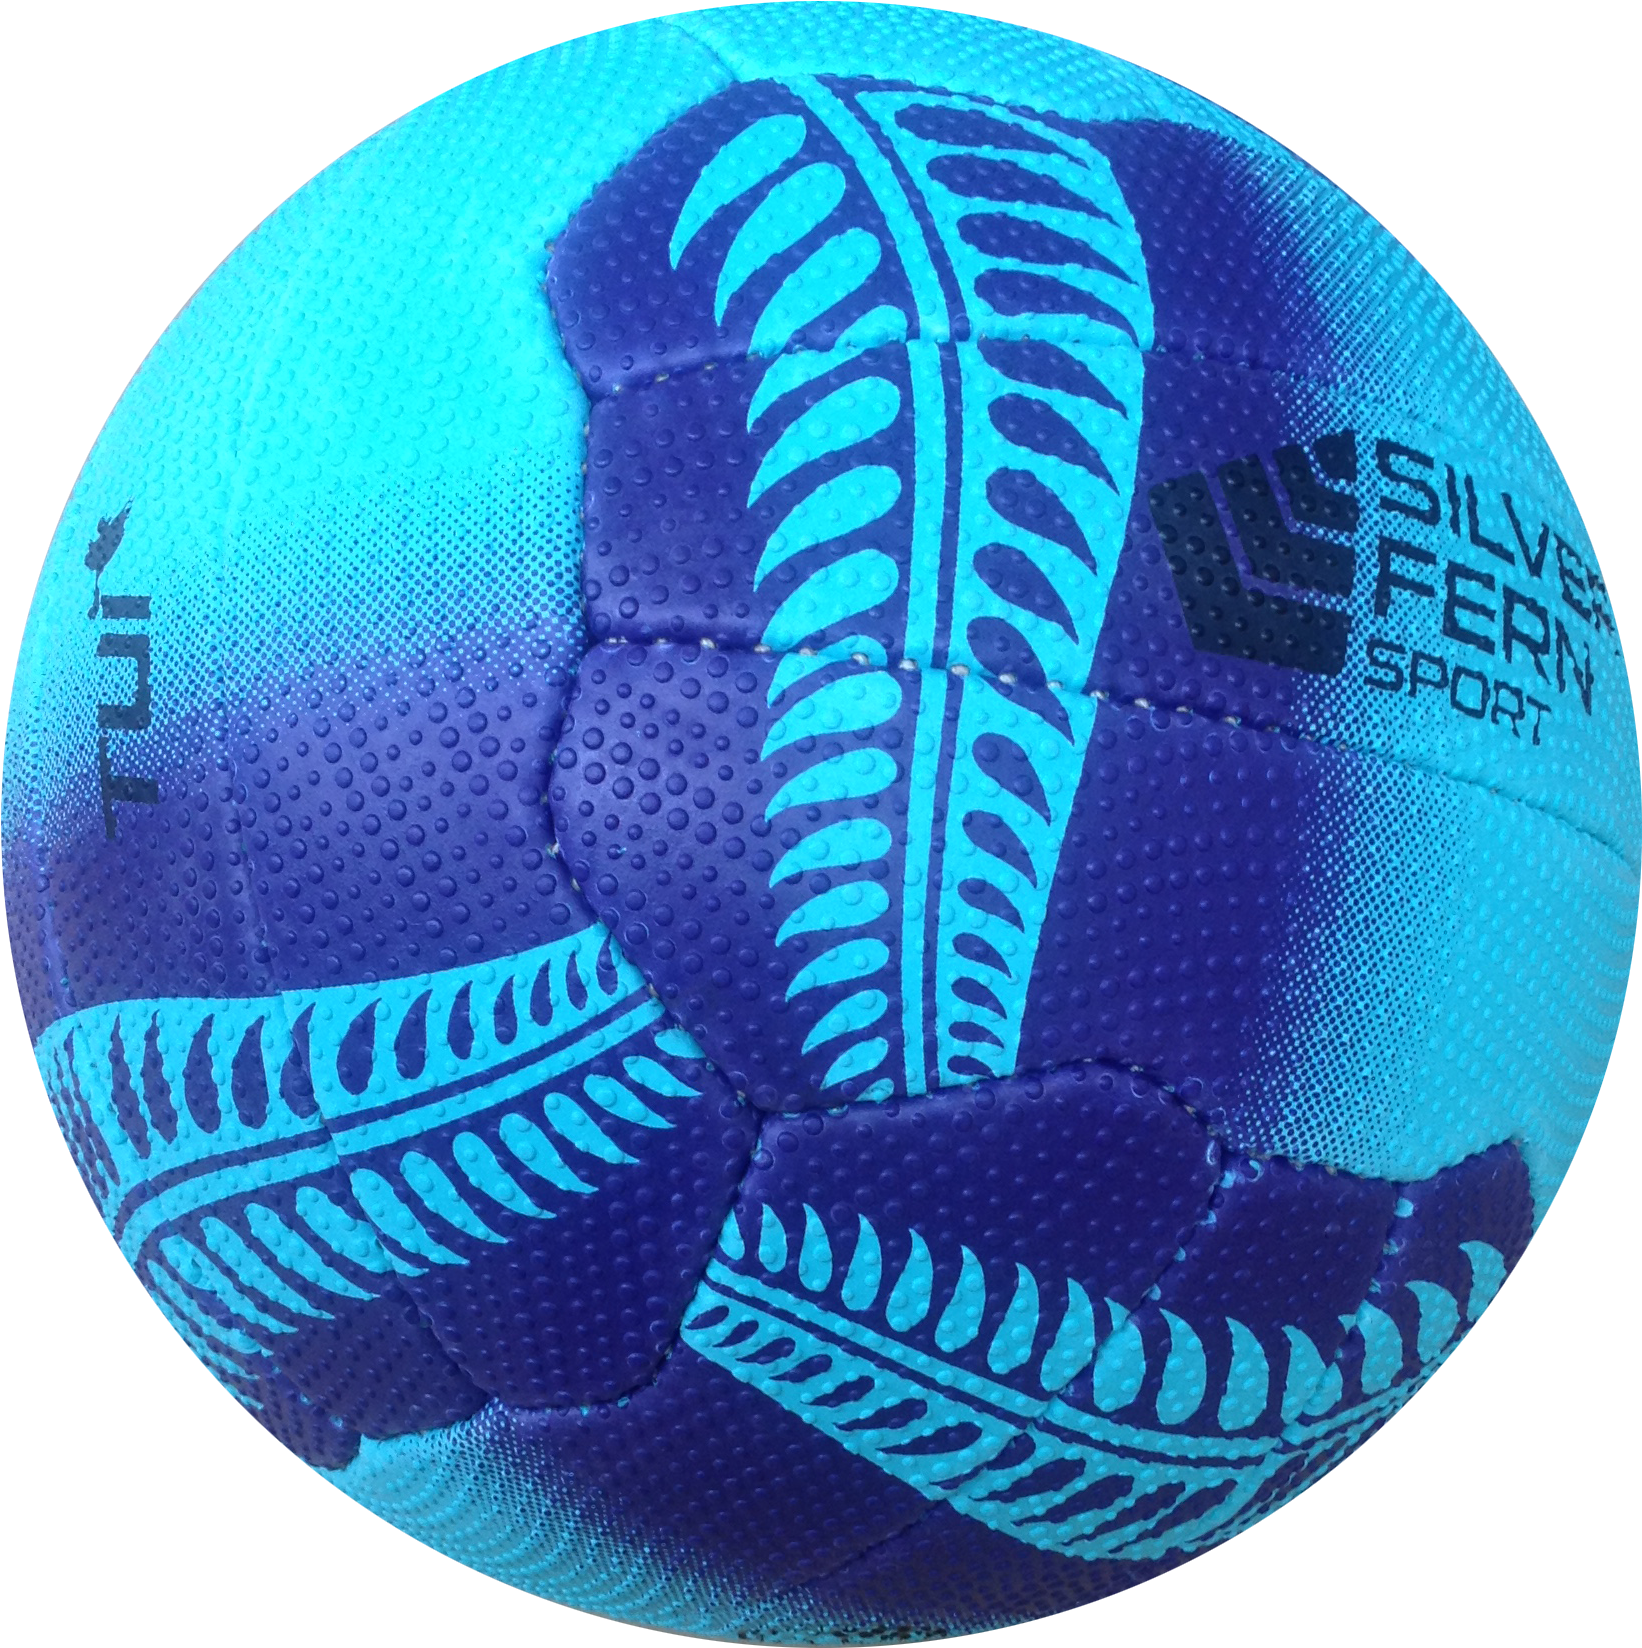 Immagine Trasparente palla netball